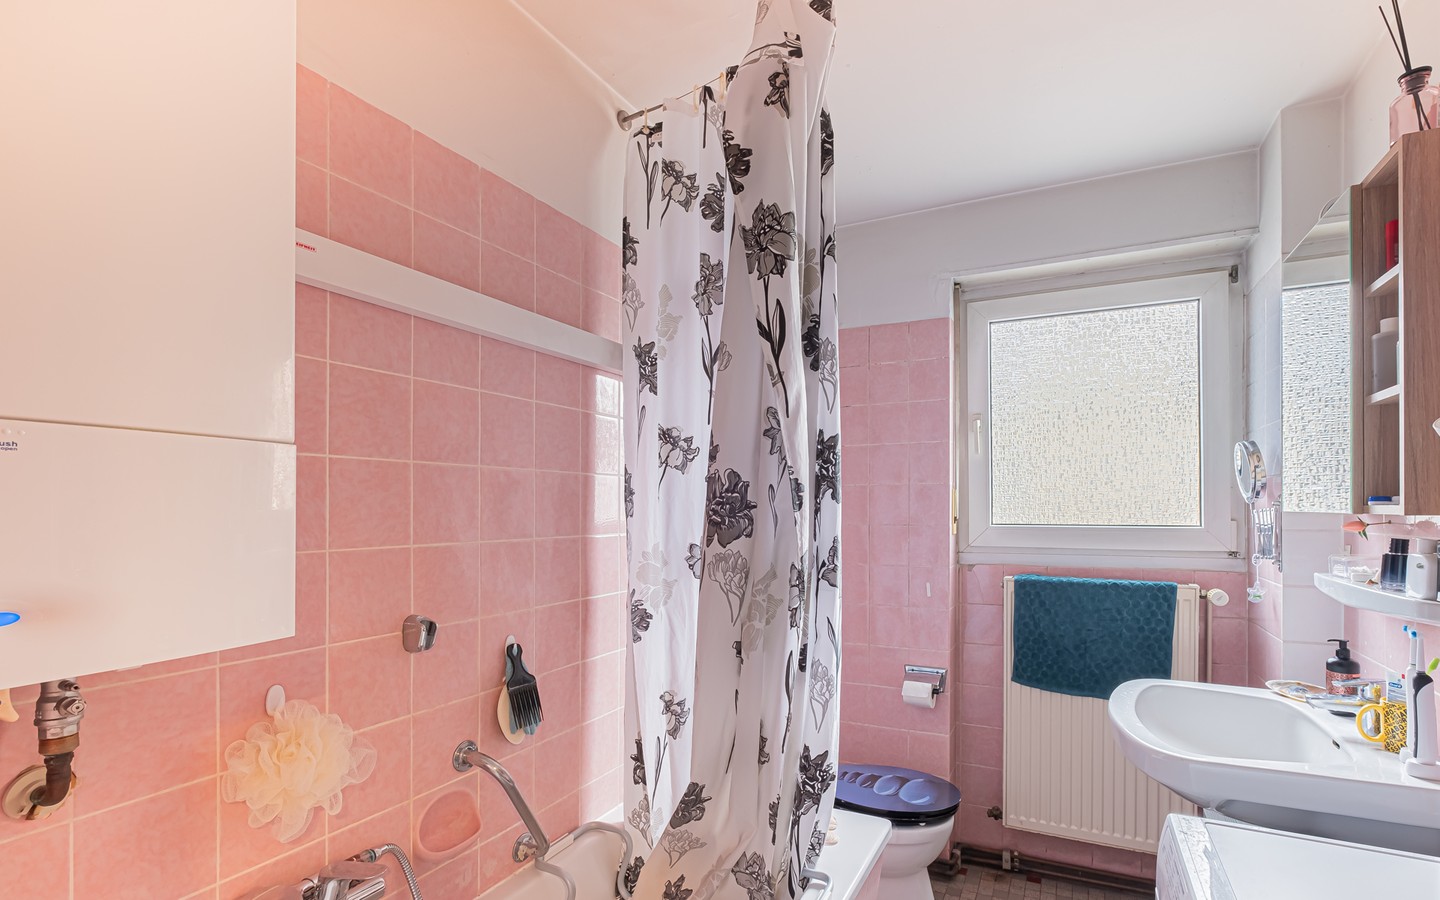 Bad - Gemütliche Zwei-Zimmer-Wohnung in zentraler Lage
Heidelbergs: Wohnen mit Komfort und Charme